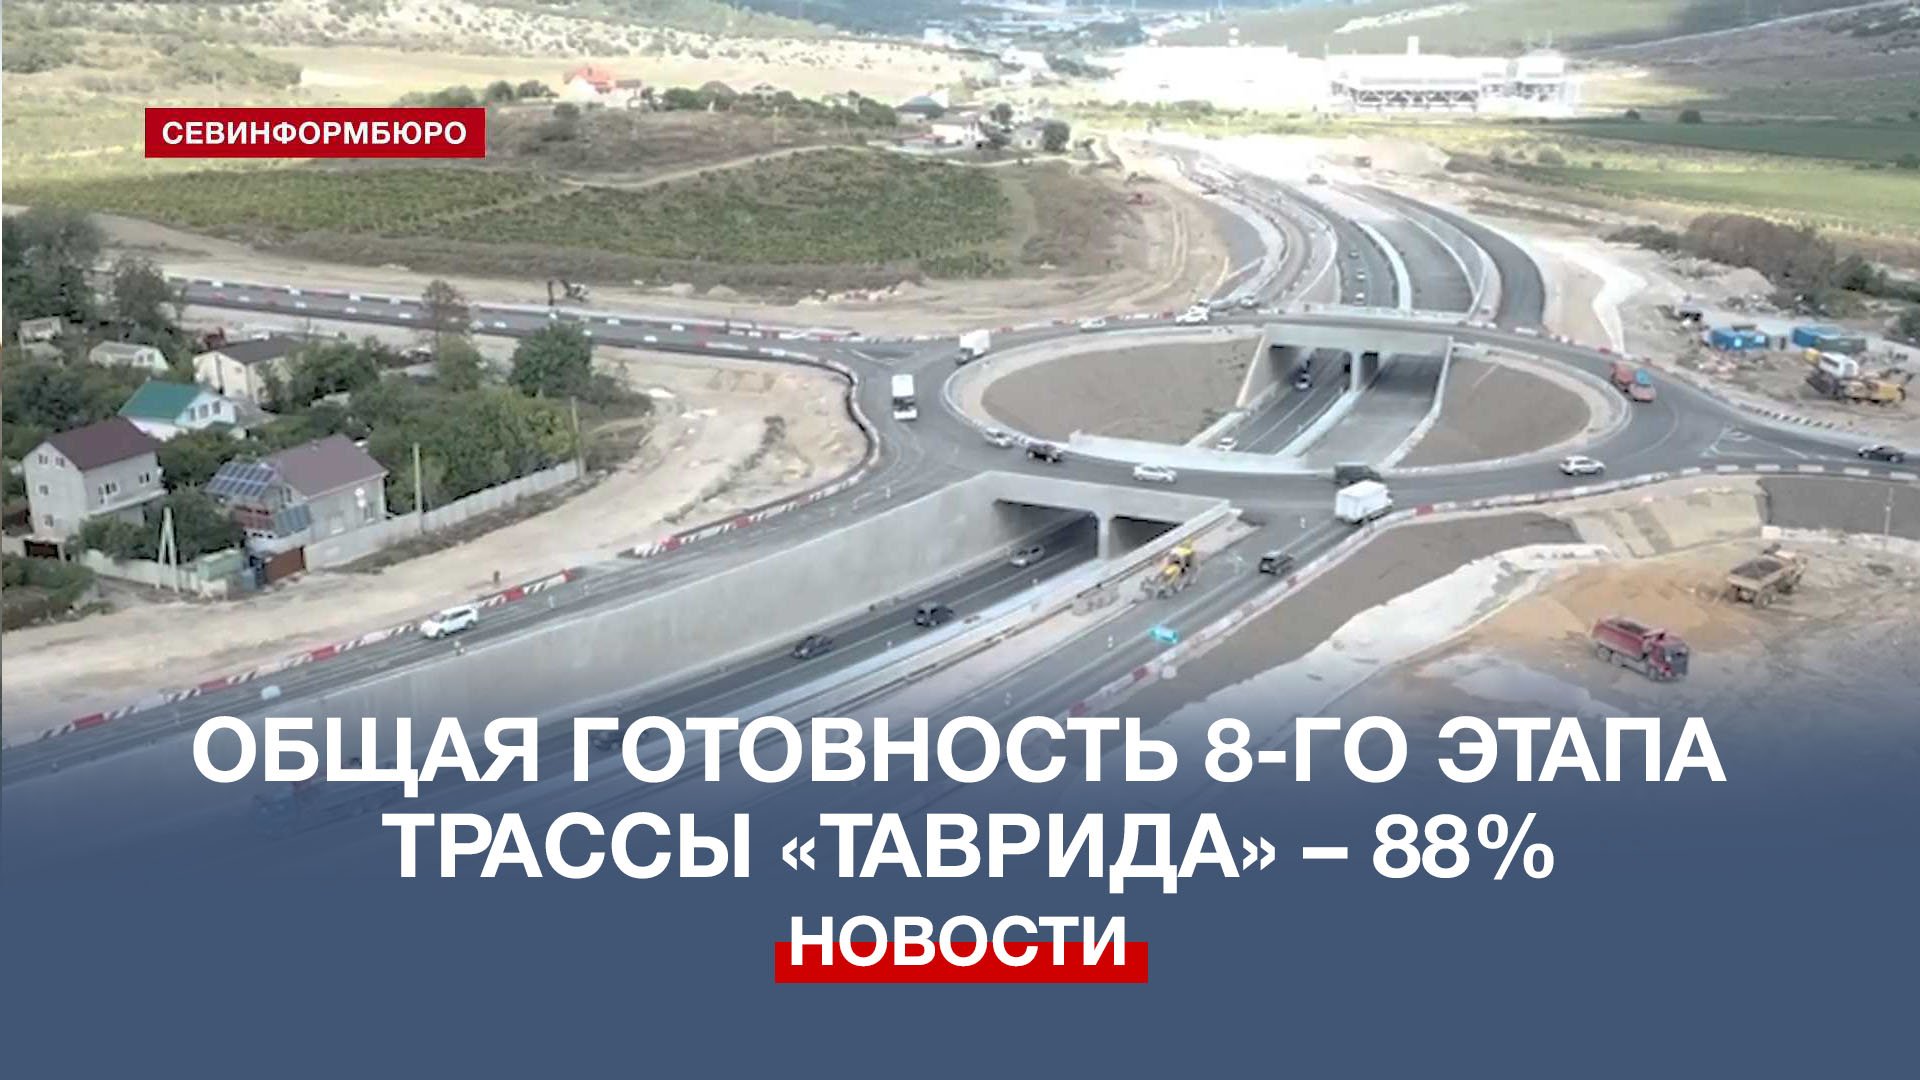 Крымский мост трасса Таврида